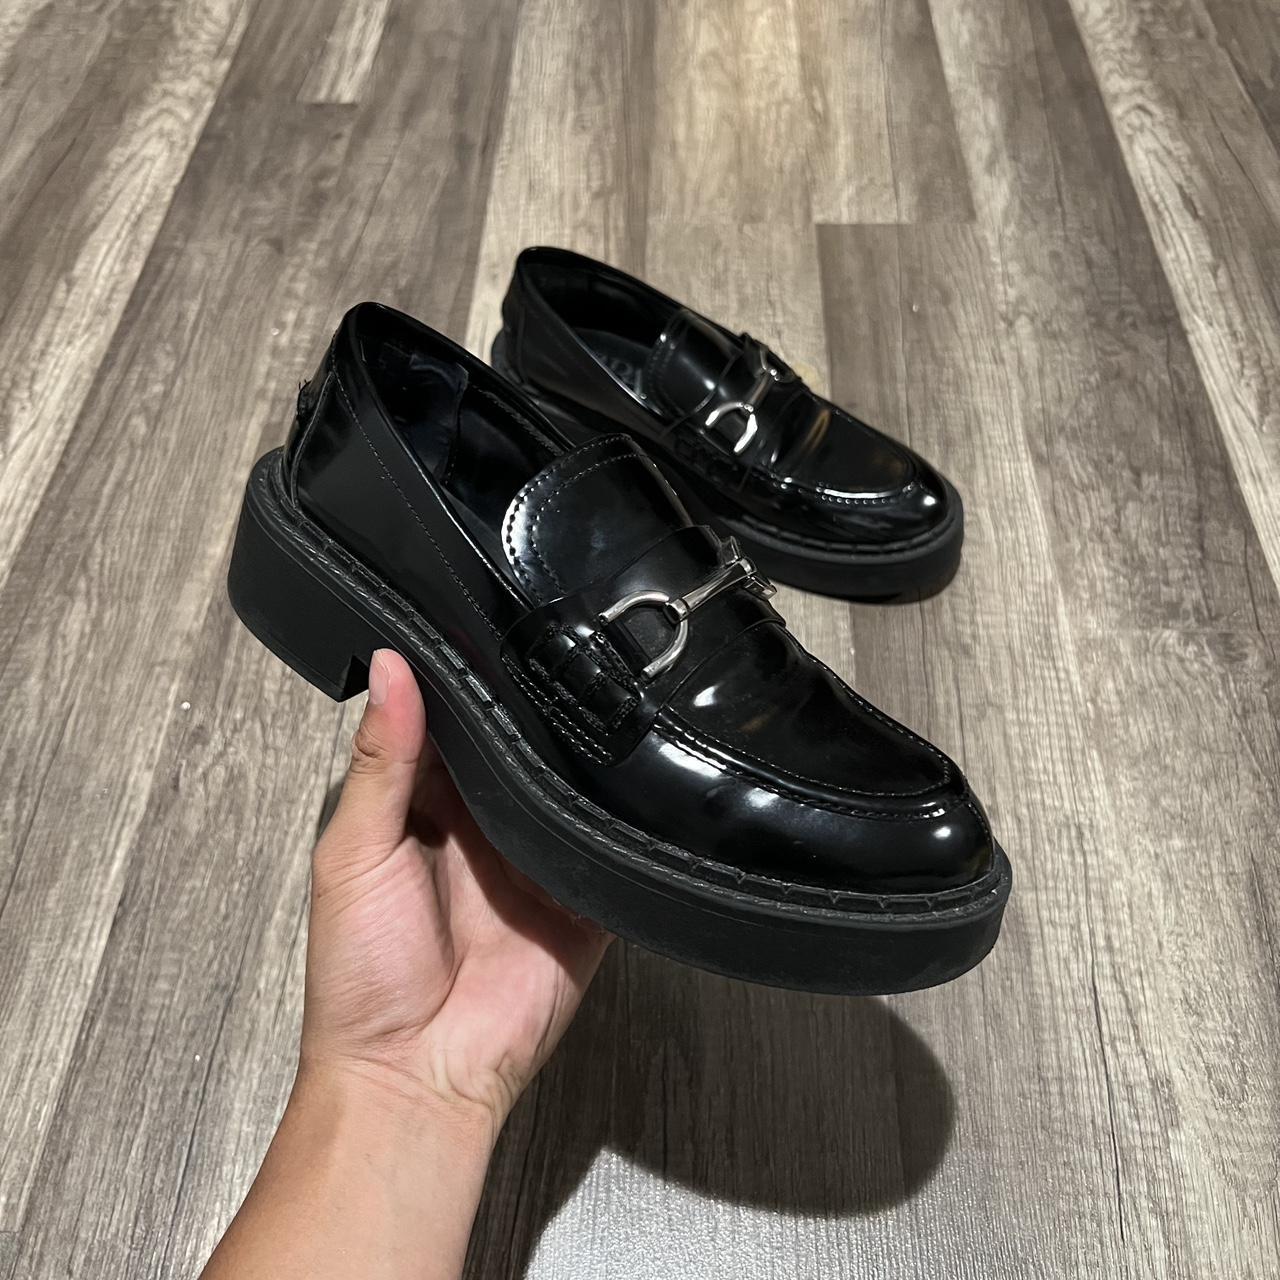 Zara Women's Black Loafers